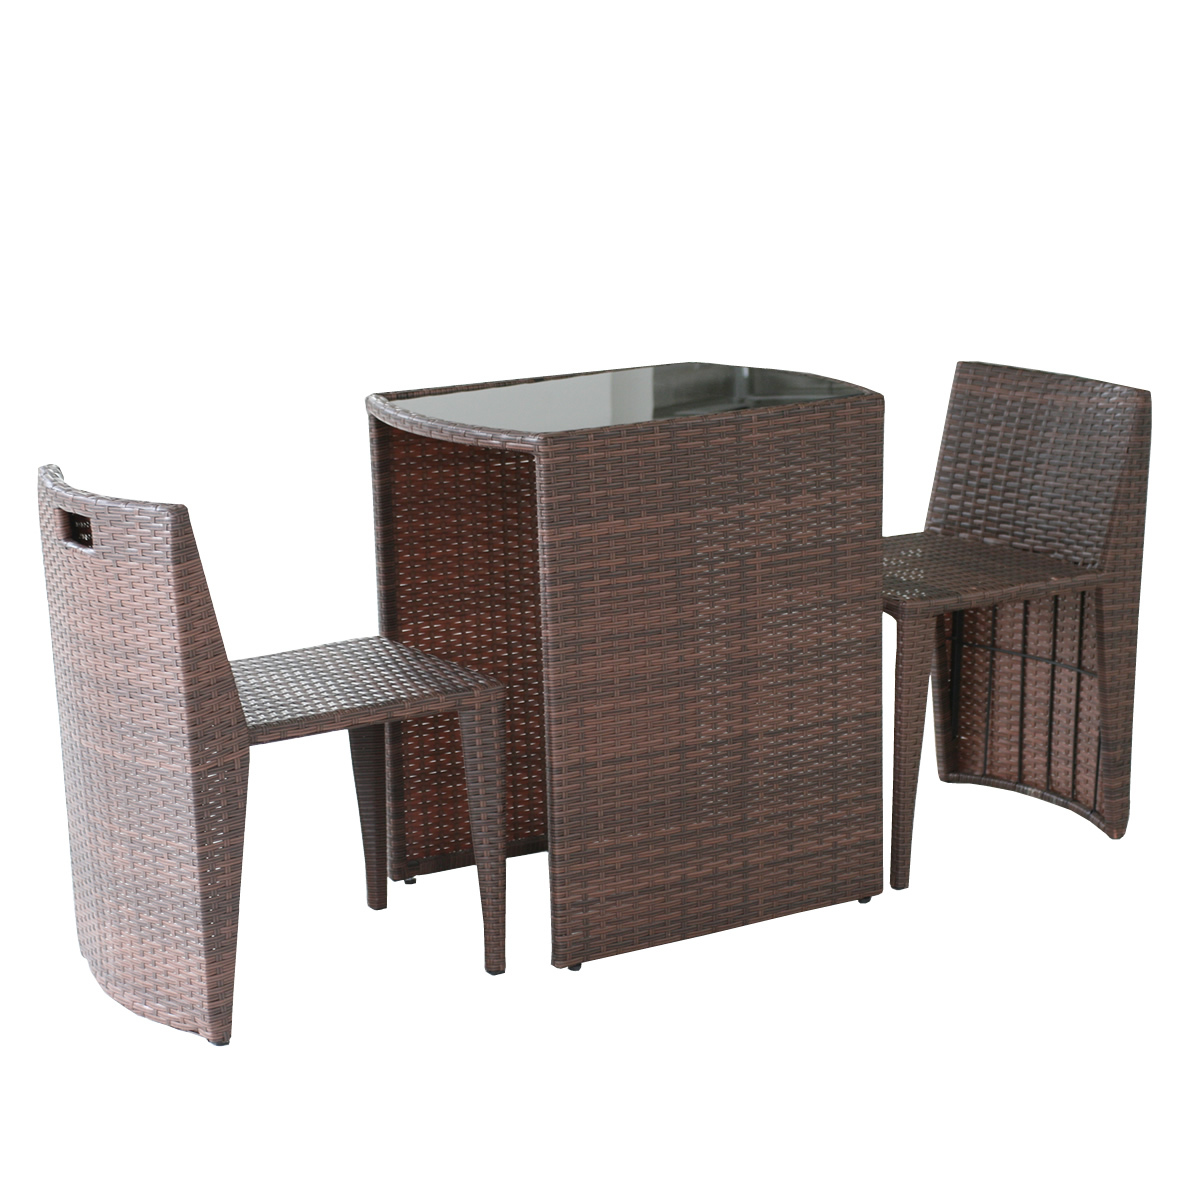 ガーデンテーブル ラタン調 テーブル チェアセット 3点セット コンパクト リゾモダン 机 椅子 お...